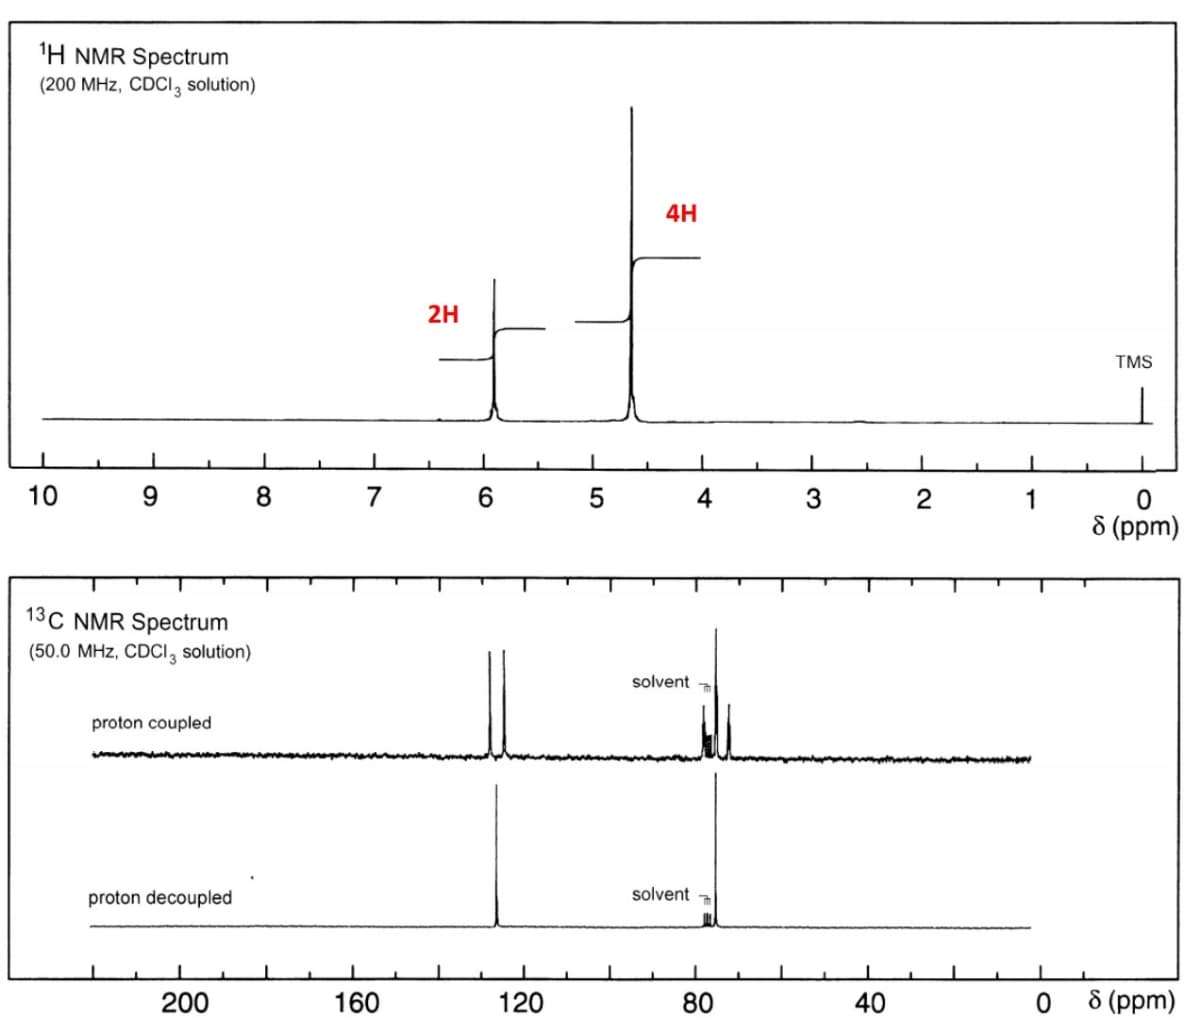 'H NMR Spectrum
(200 MHz, CDCI, solution)
4H
2H
TMS
10
9.
8
7
6.
4
1
8 (ppm)
13C NMR Spectrum
(50.0 MHz, CDCI, solution)
solvent
proton coupled
proton decoupled
solvent
200
160
120
80
40
0 8 (ppm)
